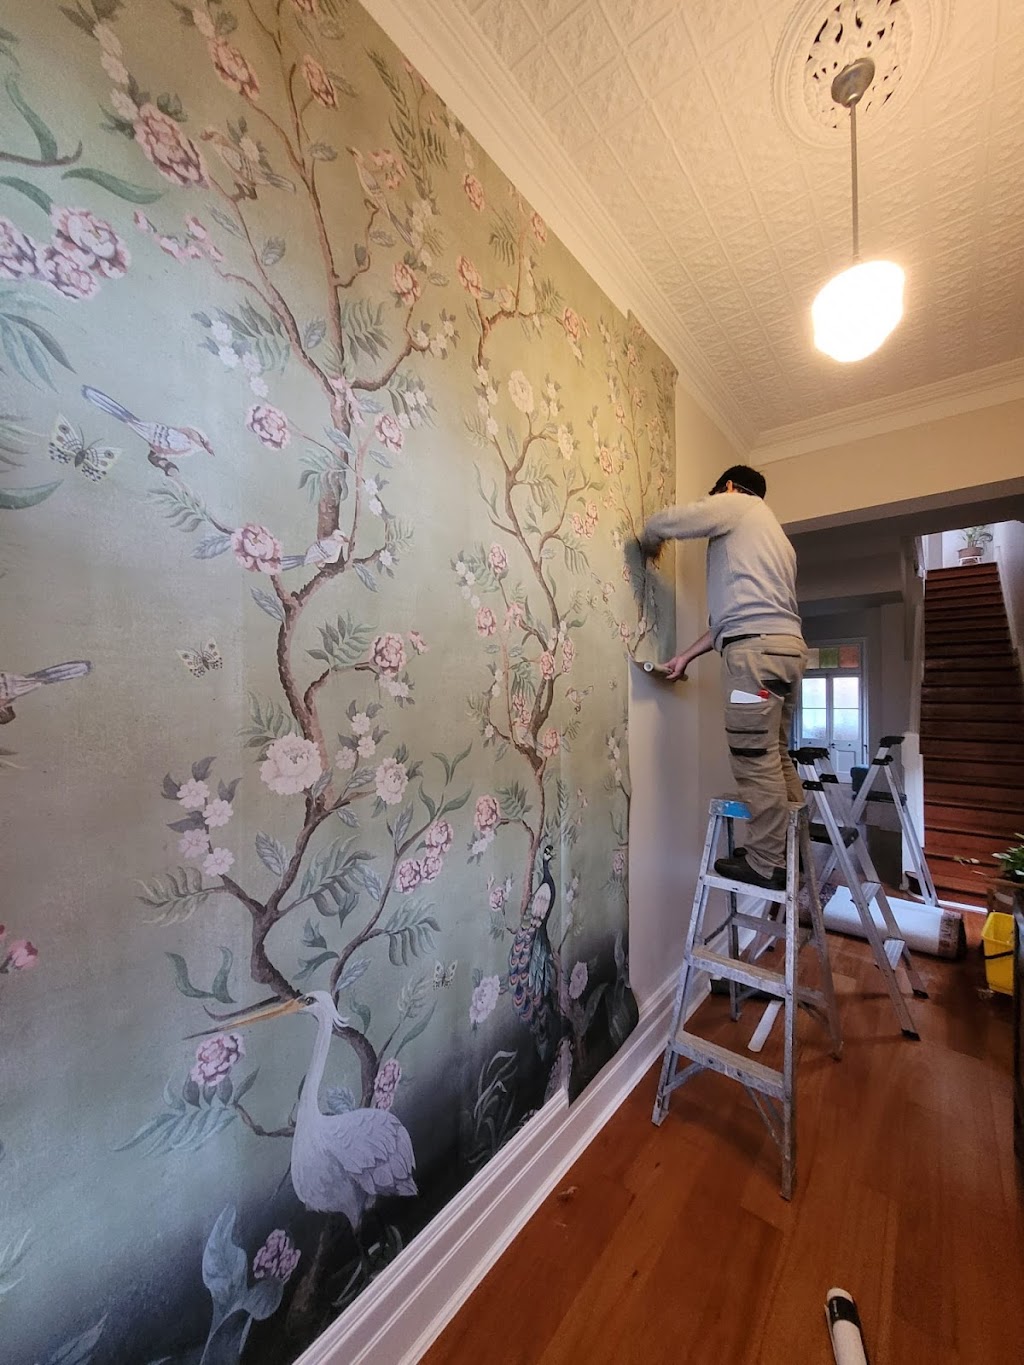 Wallpaper installer | Ingleside NSW 2101, Australia | Phone: 0470 395 348